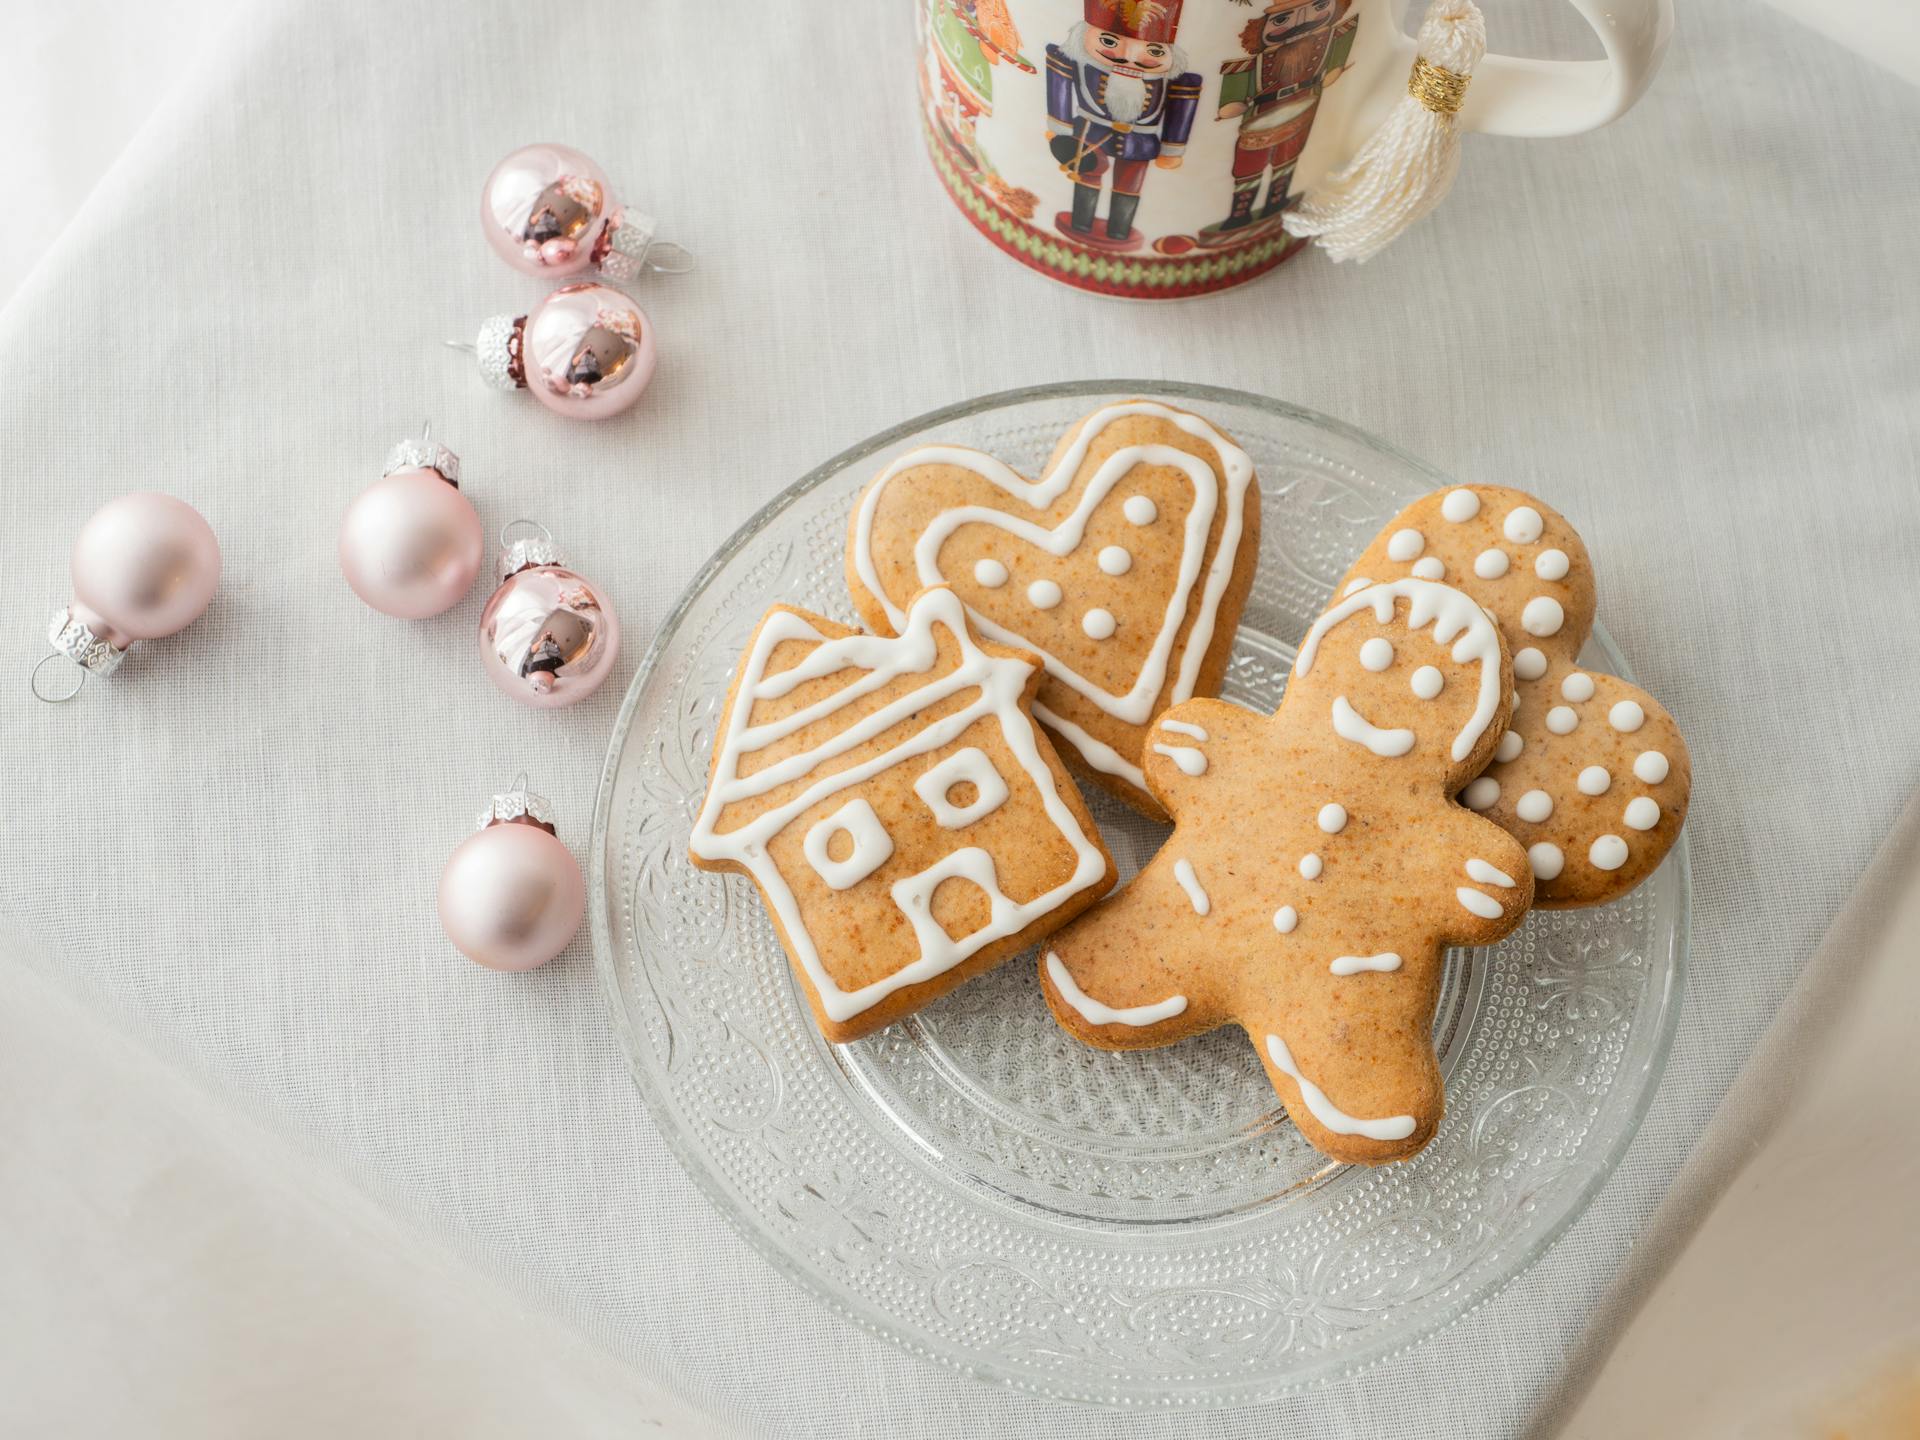 Biscuits en pain d'épices et décorations de Noël | Source : Pexels